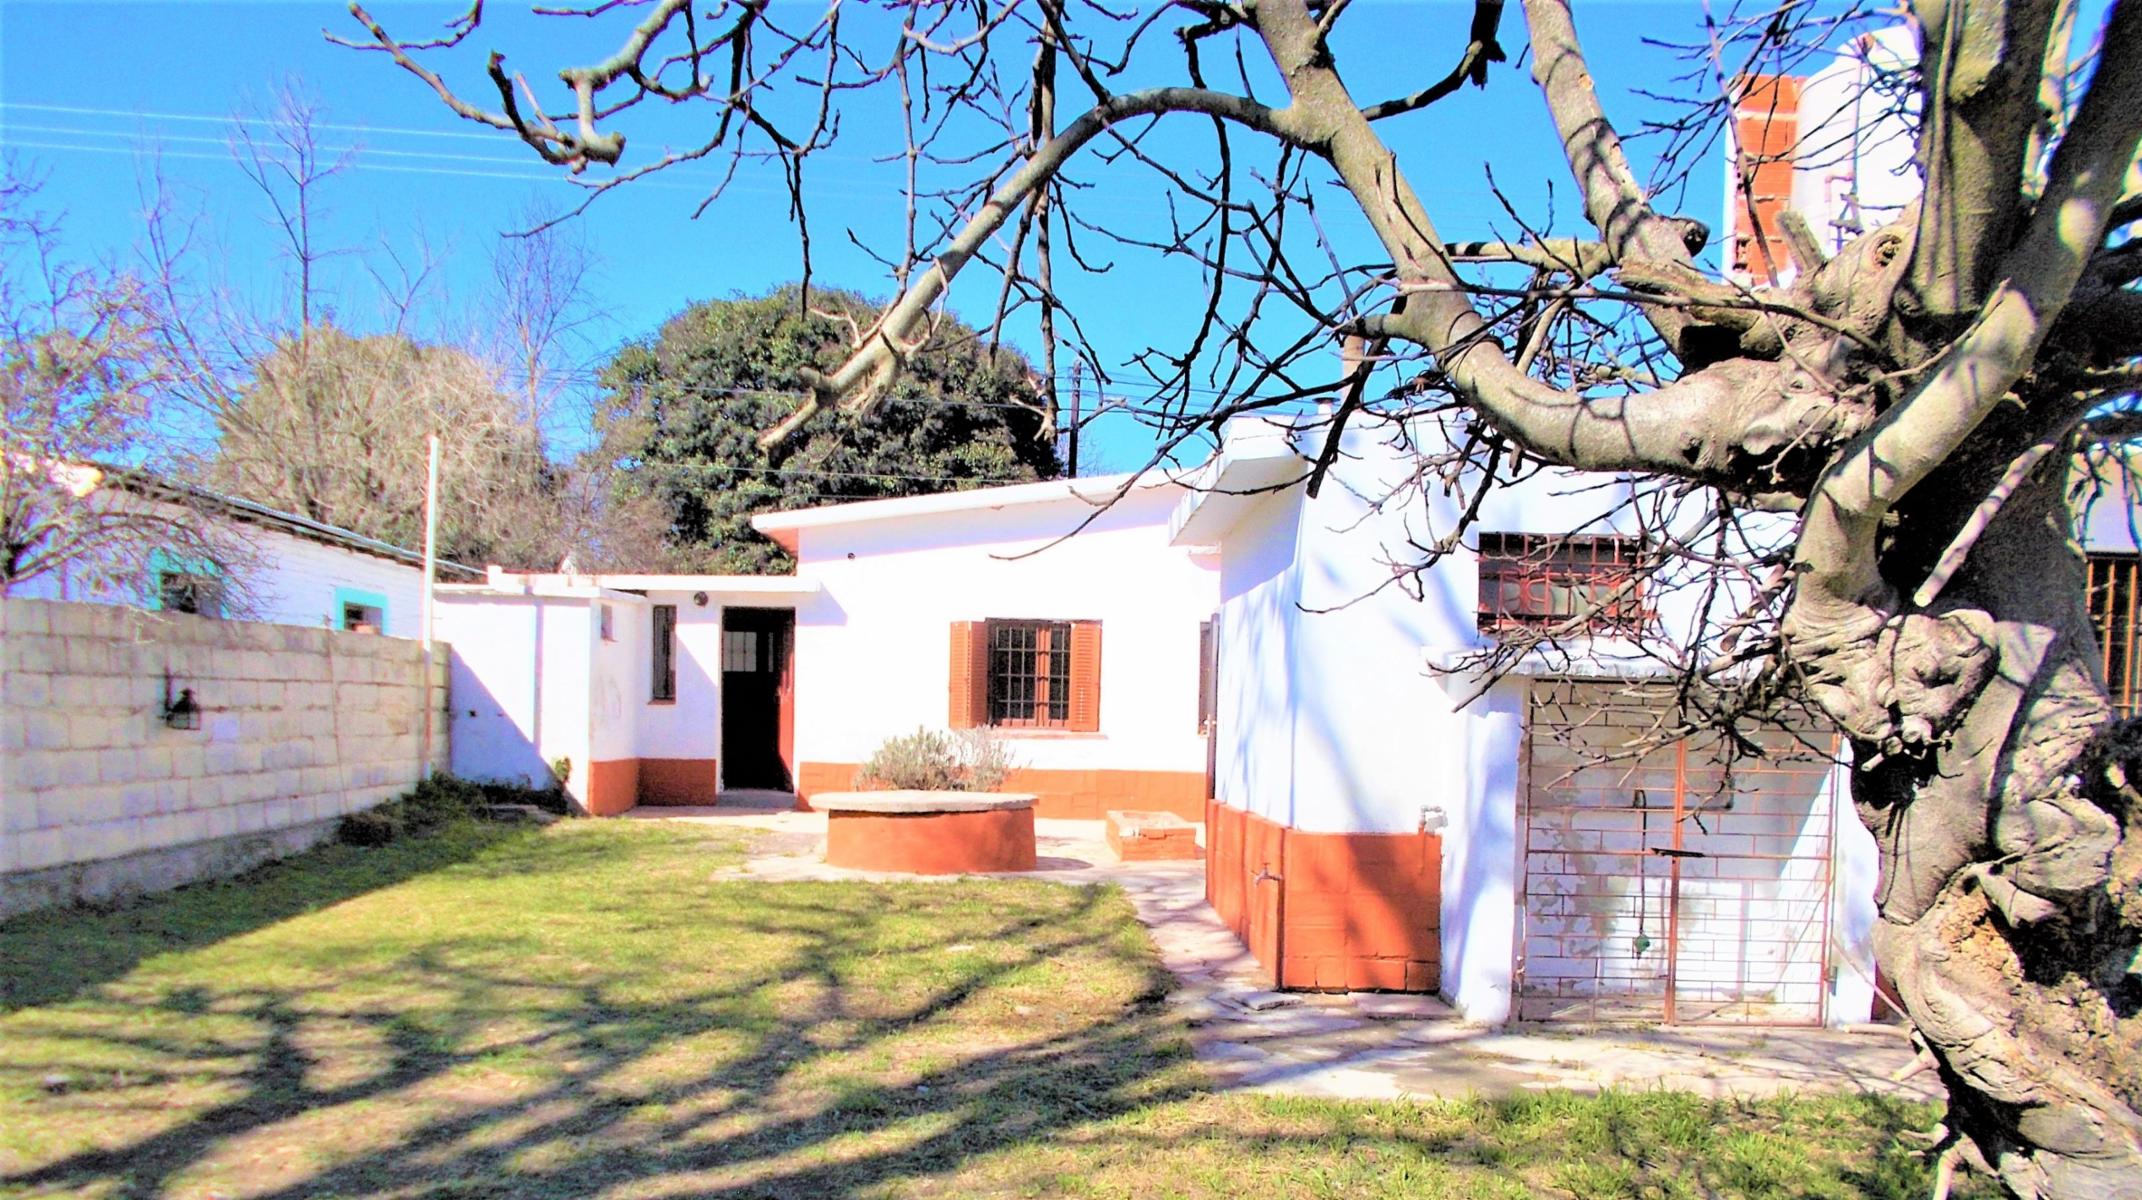 Casa 4 dormitorios,  Parque,  Garage,  Villa Giardino,  Córdoba